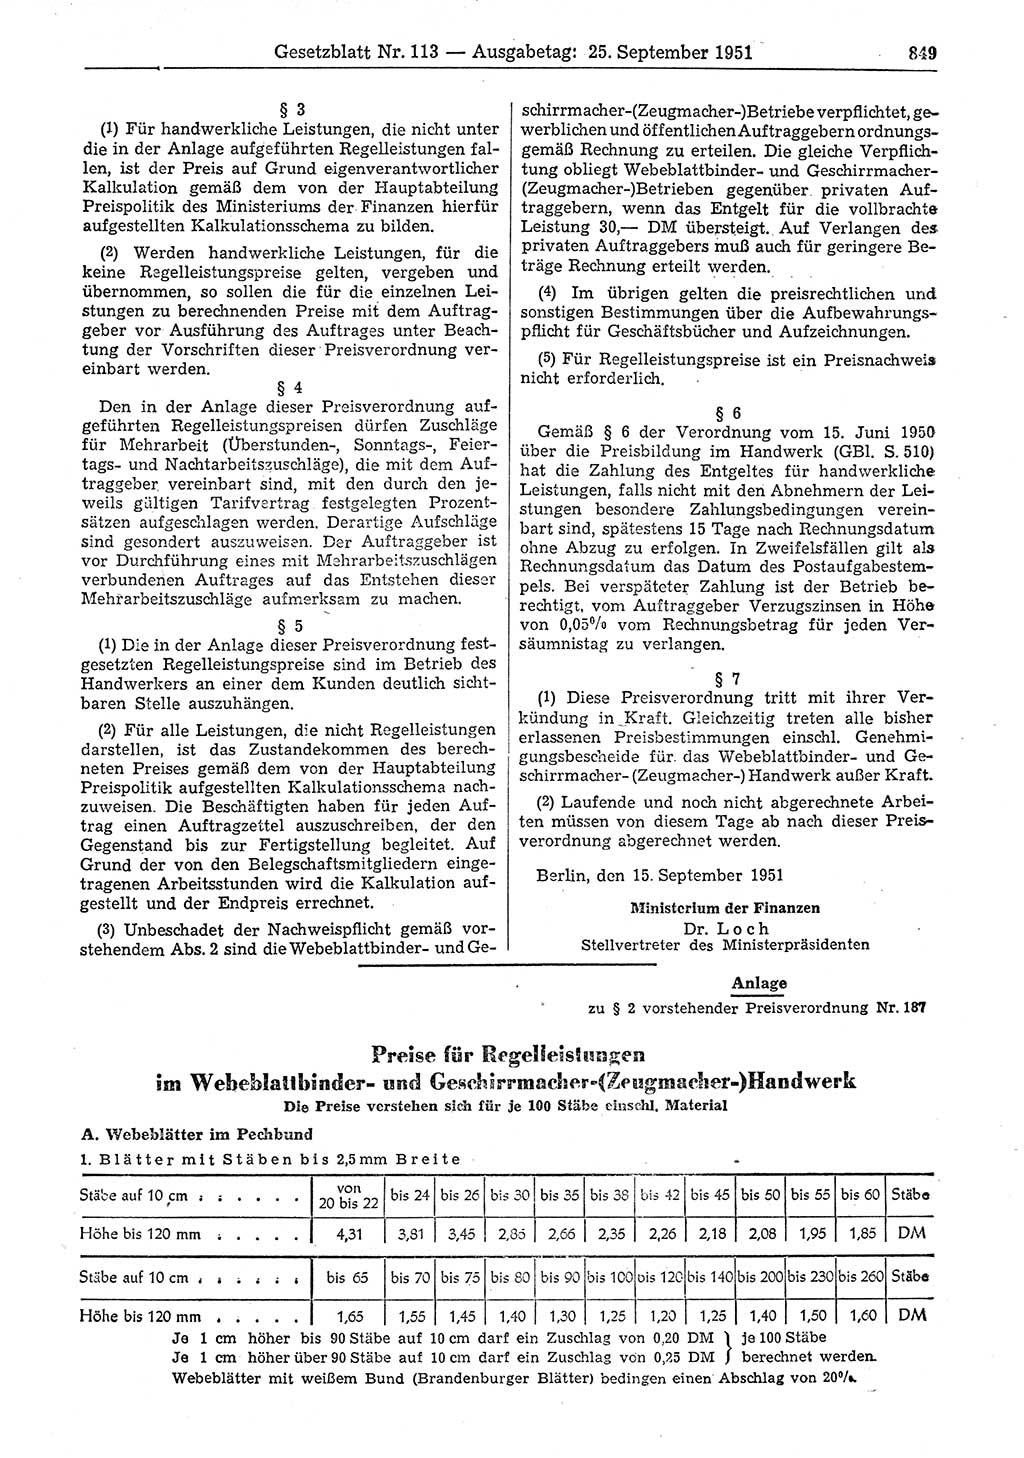 Gesetzblatt (GBl.) der Deutschen Demokratischen Republik (DDR) 1951, Seite 849 (GBl. DDR 1951, S. 849)